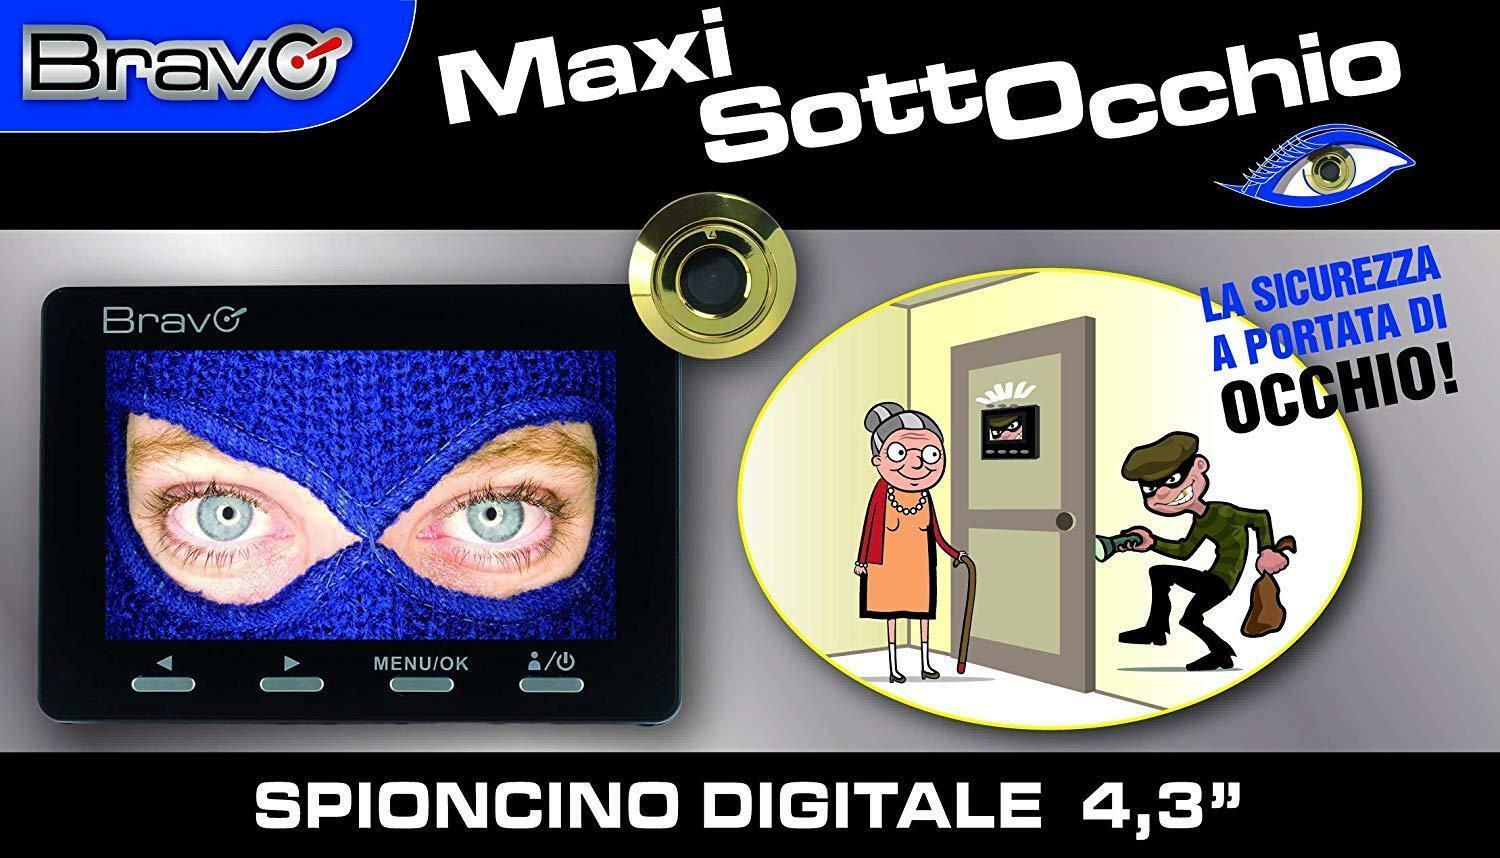 bravo bravo maxi sottocchio spioncino digitale elettronico con monitor lcd 4,3 pollici 92902903